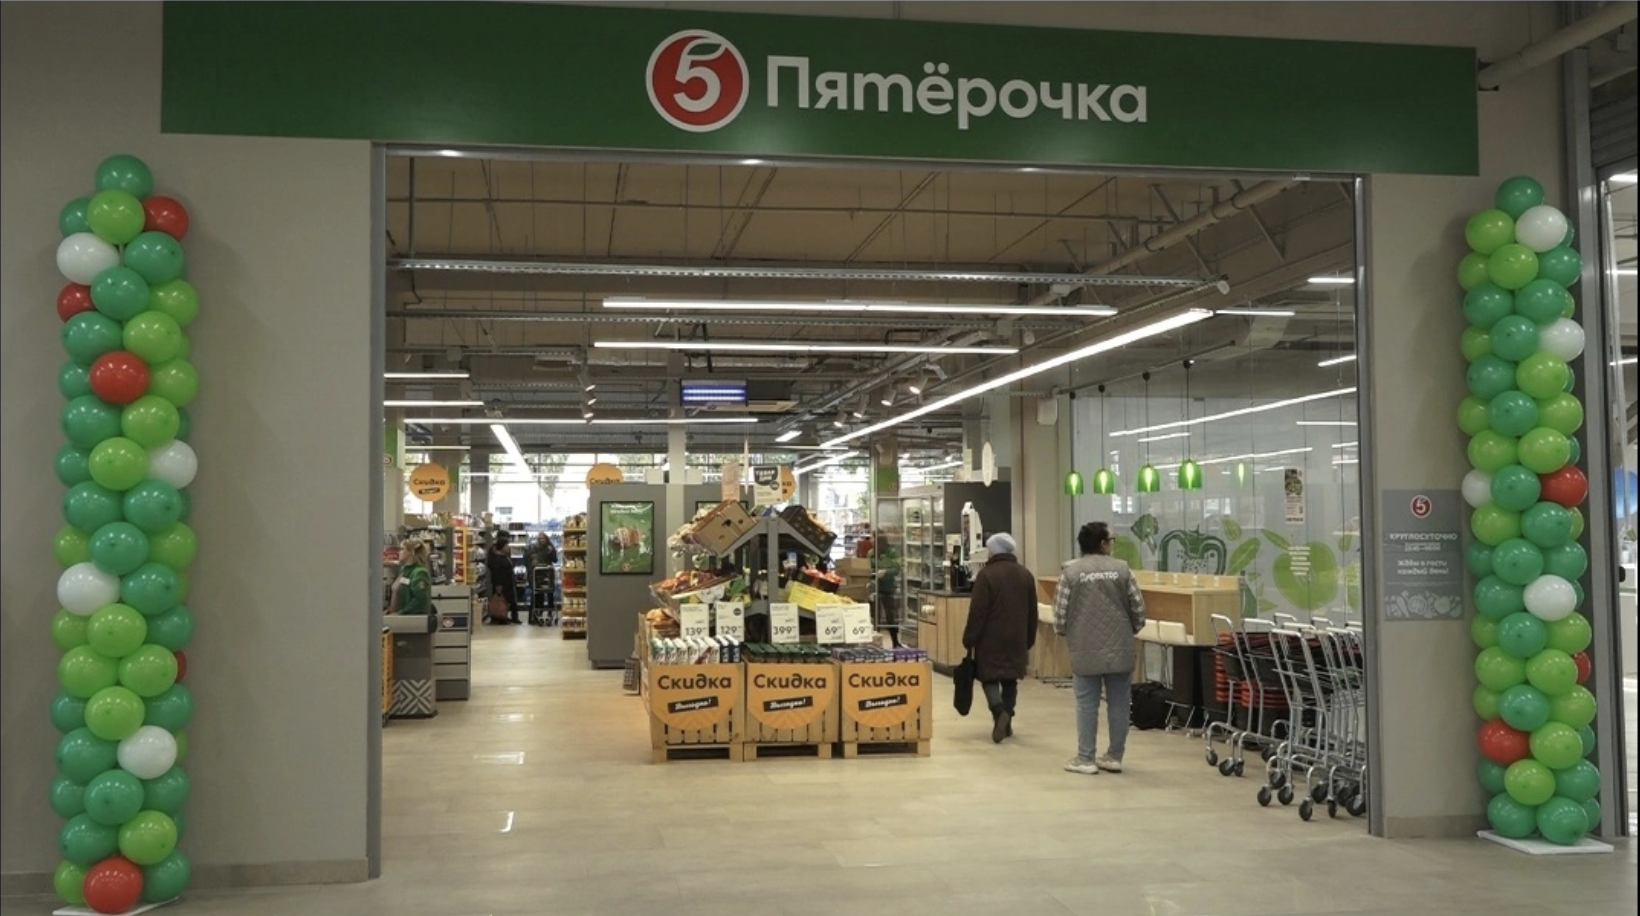 Пятерочке 25 лет розыгрыш. Открытие супермаркета. ТЦ парк Омск открытие. Открылся новый магазин. Пятерочка.